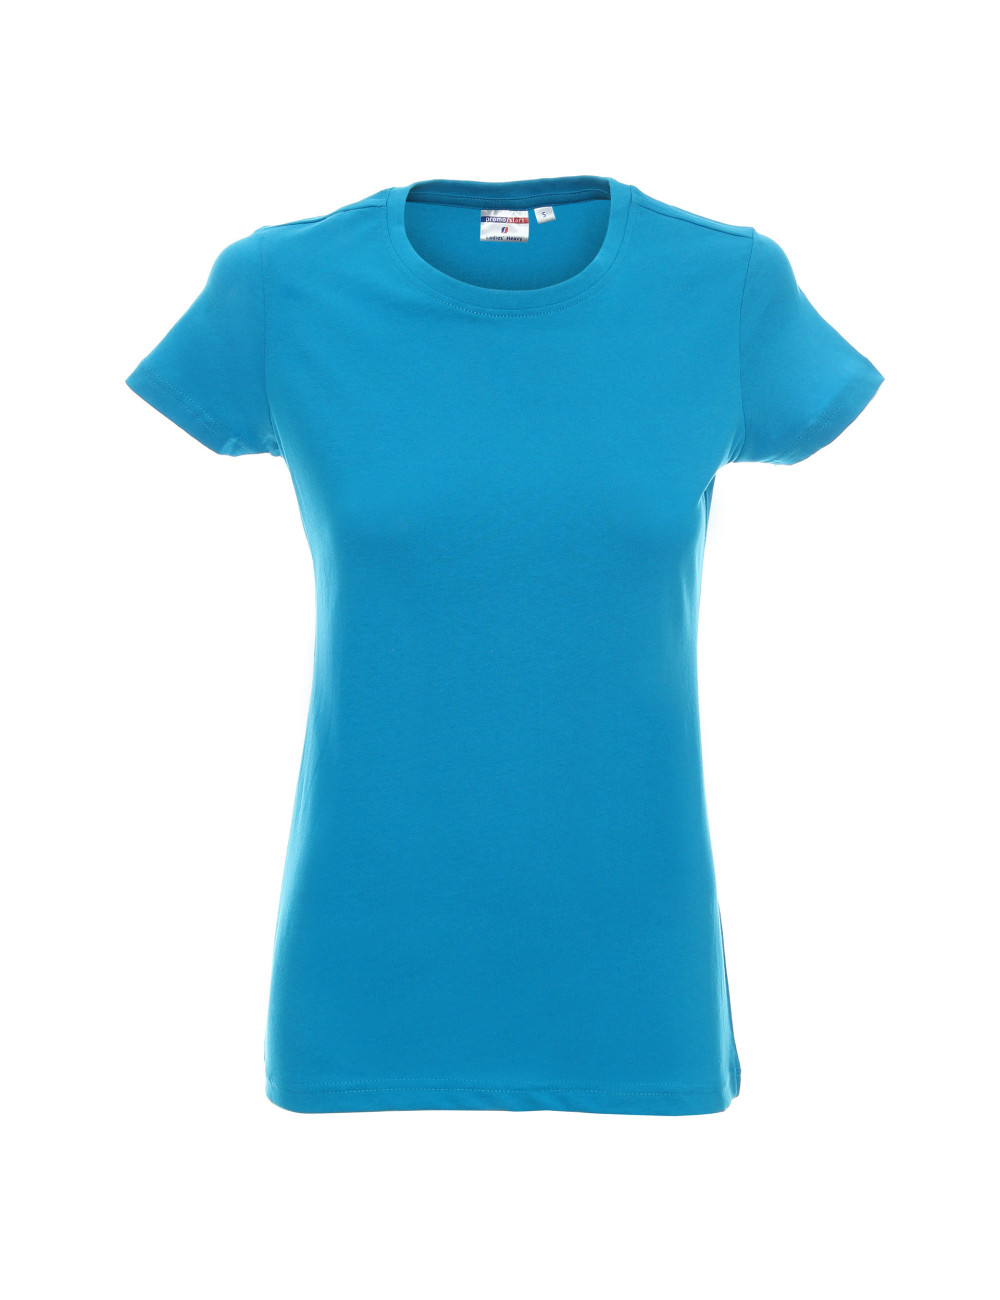 Damen schweres Damen-T-Shirt türkis Promostars